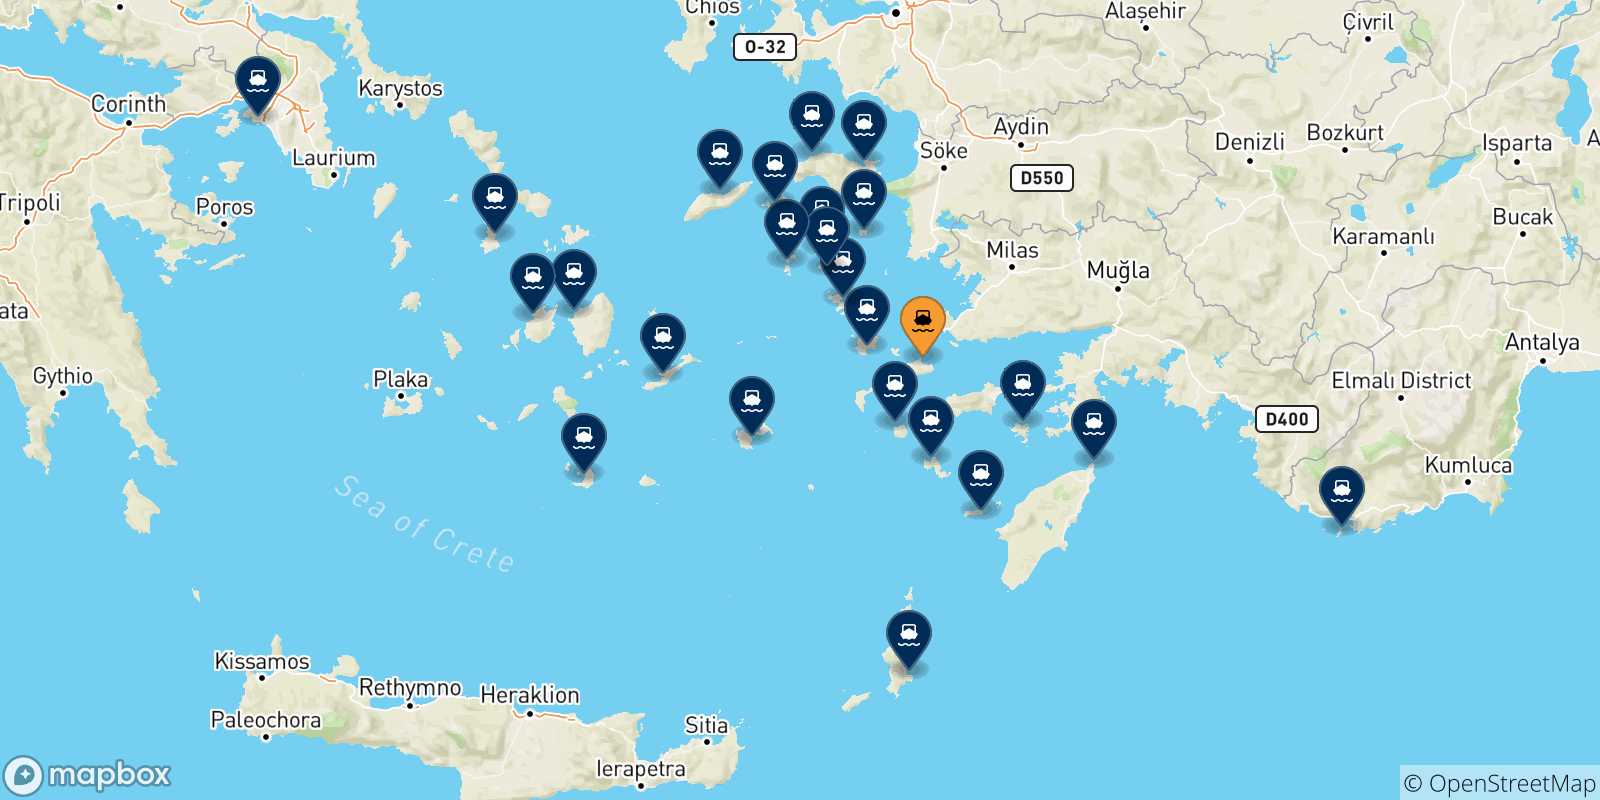 Mappa delle possibili rotte tra Kos e la Grecia